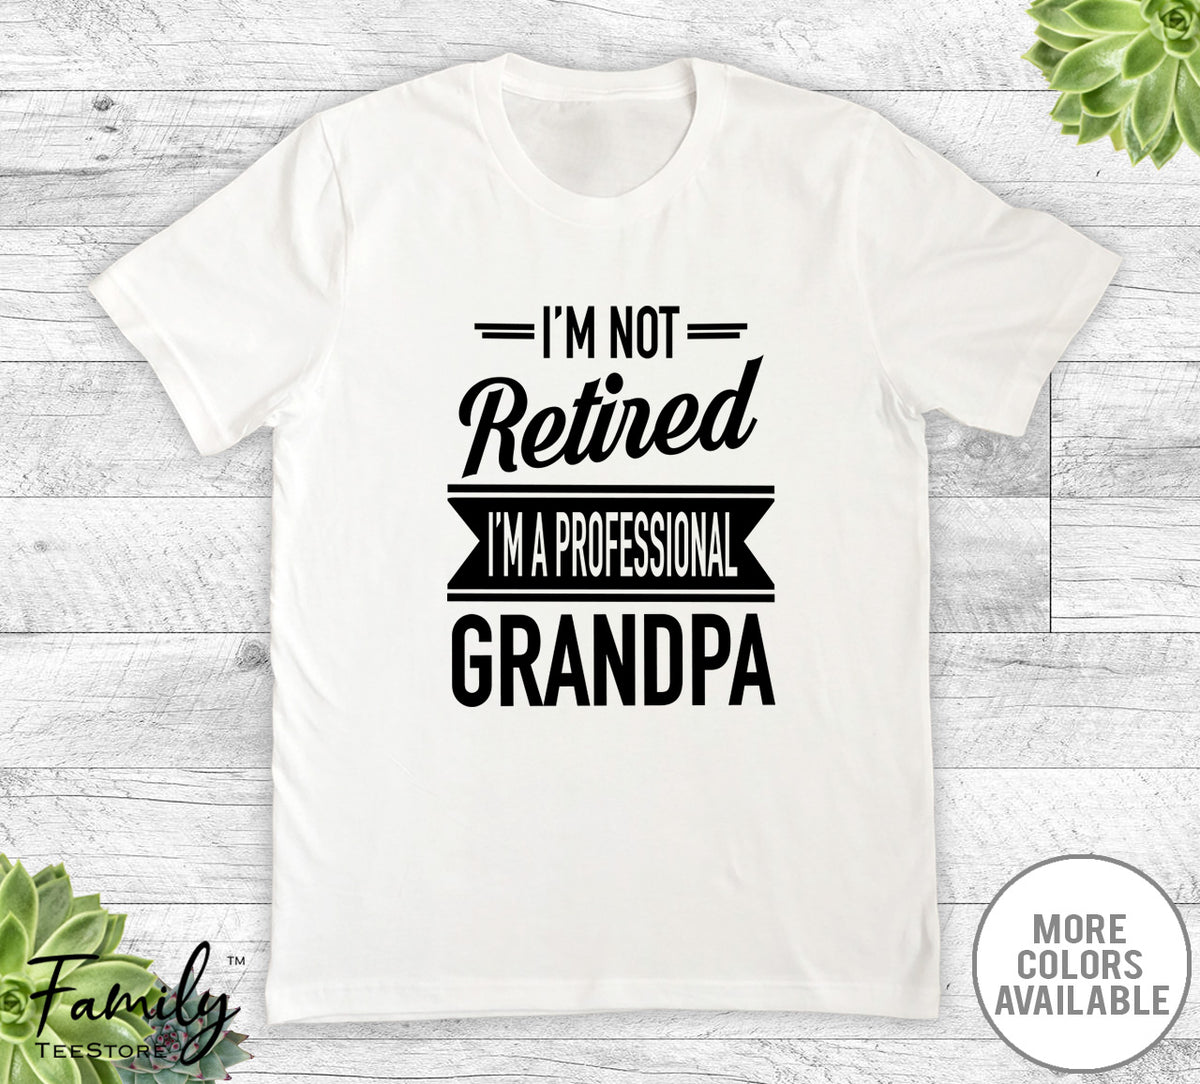 I'm Not Retired I'm A Professional Grandpa - Unisex T-shirt - Grandpa Shirt - Grandpa Gift - familyteeprints